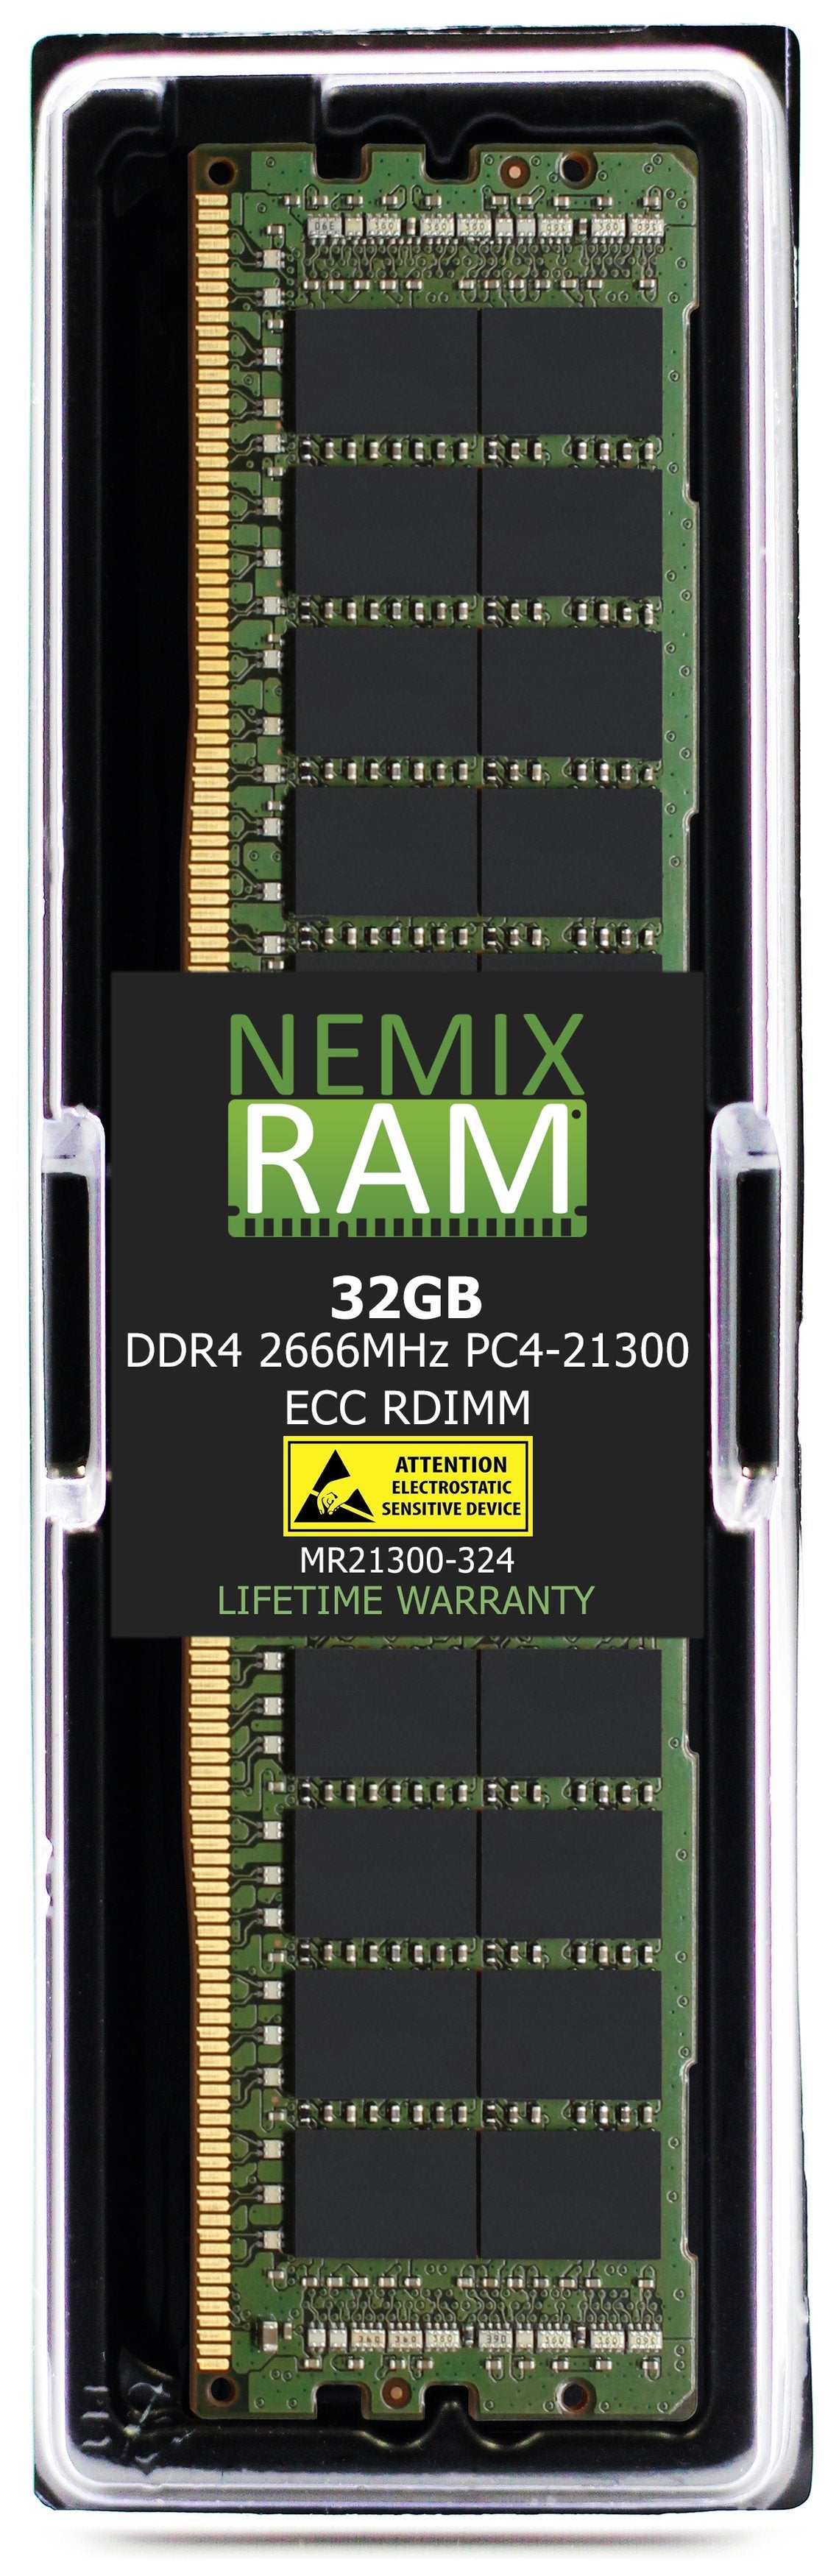 32GB DDR4 2666MHZ PC4-21300 RDIMM Compatible with Supermicro MEM-DR432L-CL02-ER29